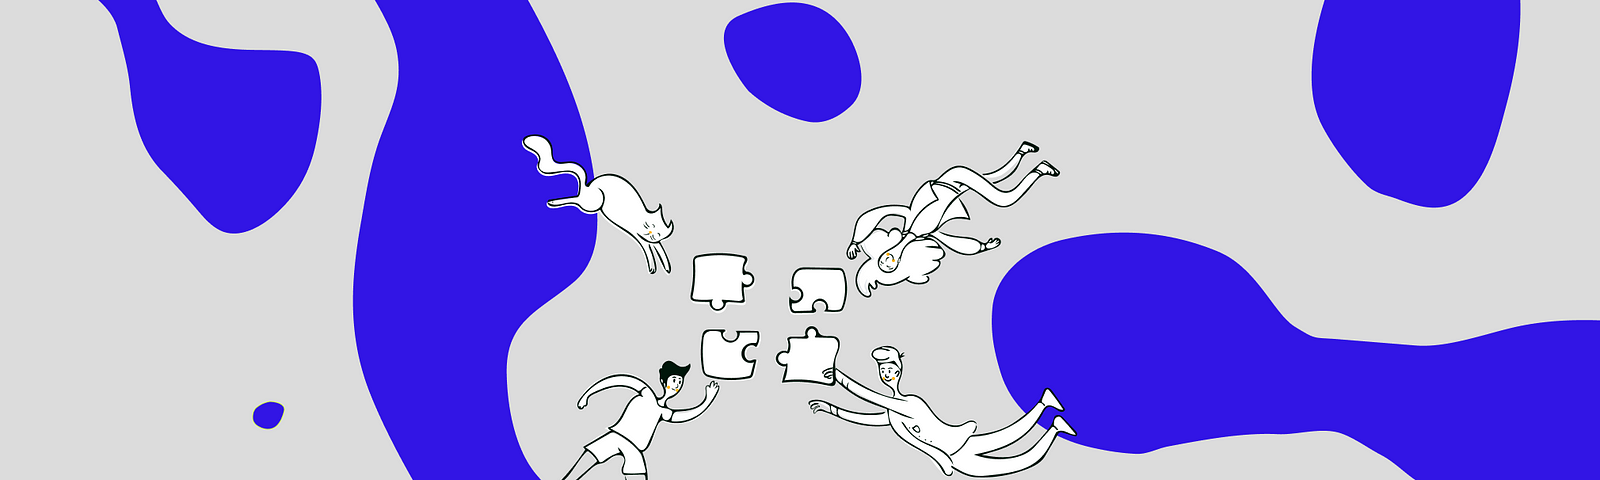 Ilustração com traços minimalistas. O fundo é cinza, com algumas manchas na cor violeta. Ao centro, em branco, há um gato, dois homens e uma mulher, cada um carregando uma peça de um quebra-cabeças. Eles parecem estar em movimento, direcionando-se para encaixar as peças.